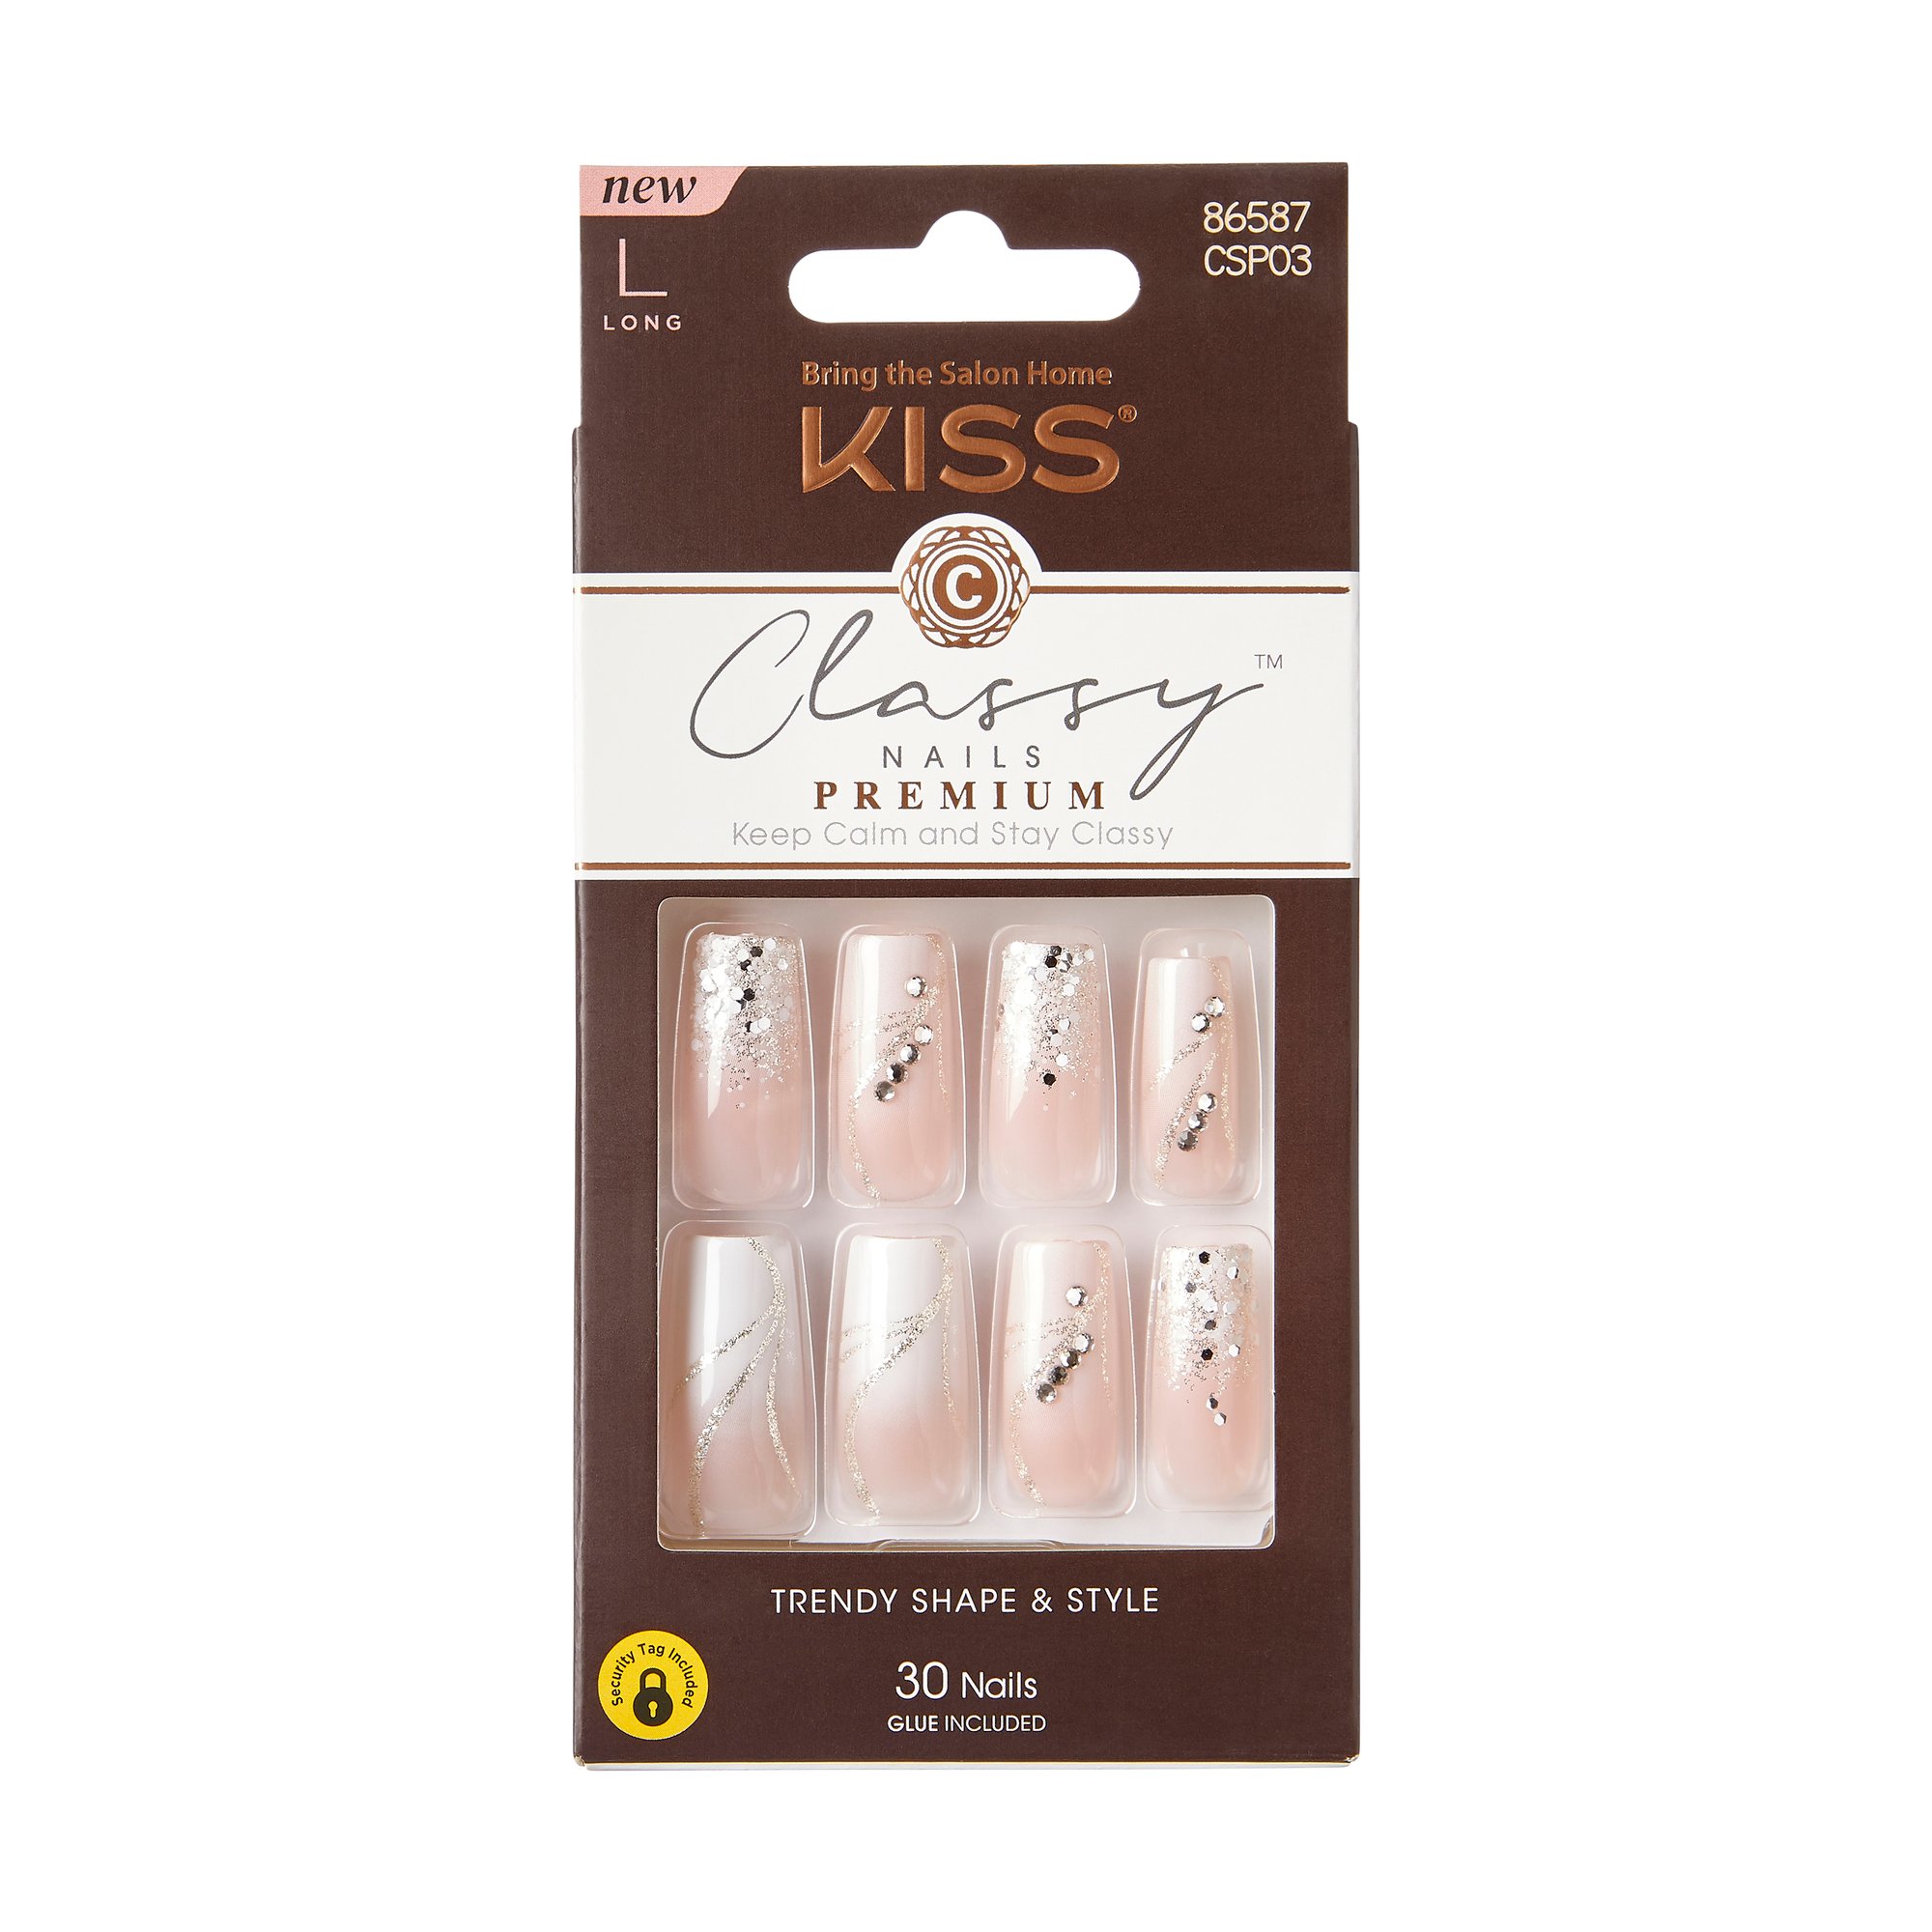 KISS Premium Classy Nails - Stunning - Shop Nail Sets at H-E-B